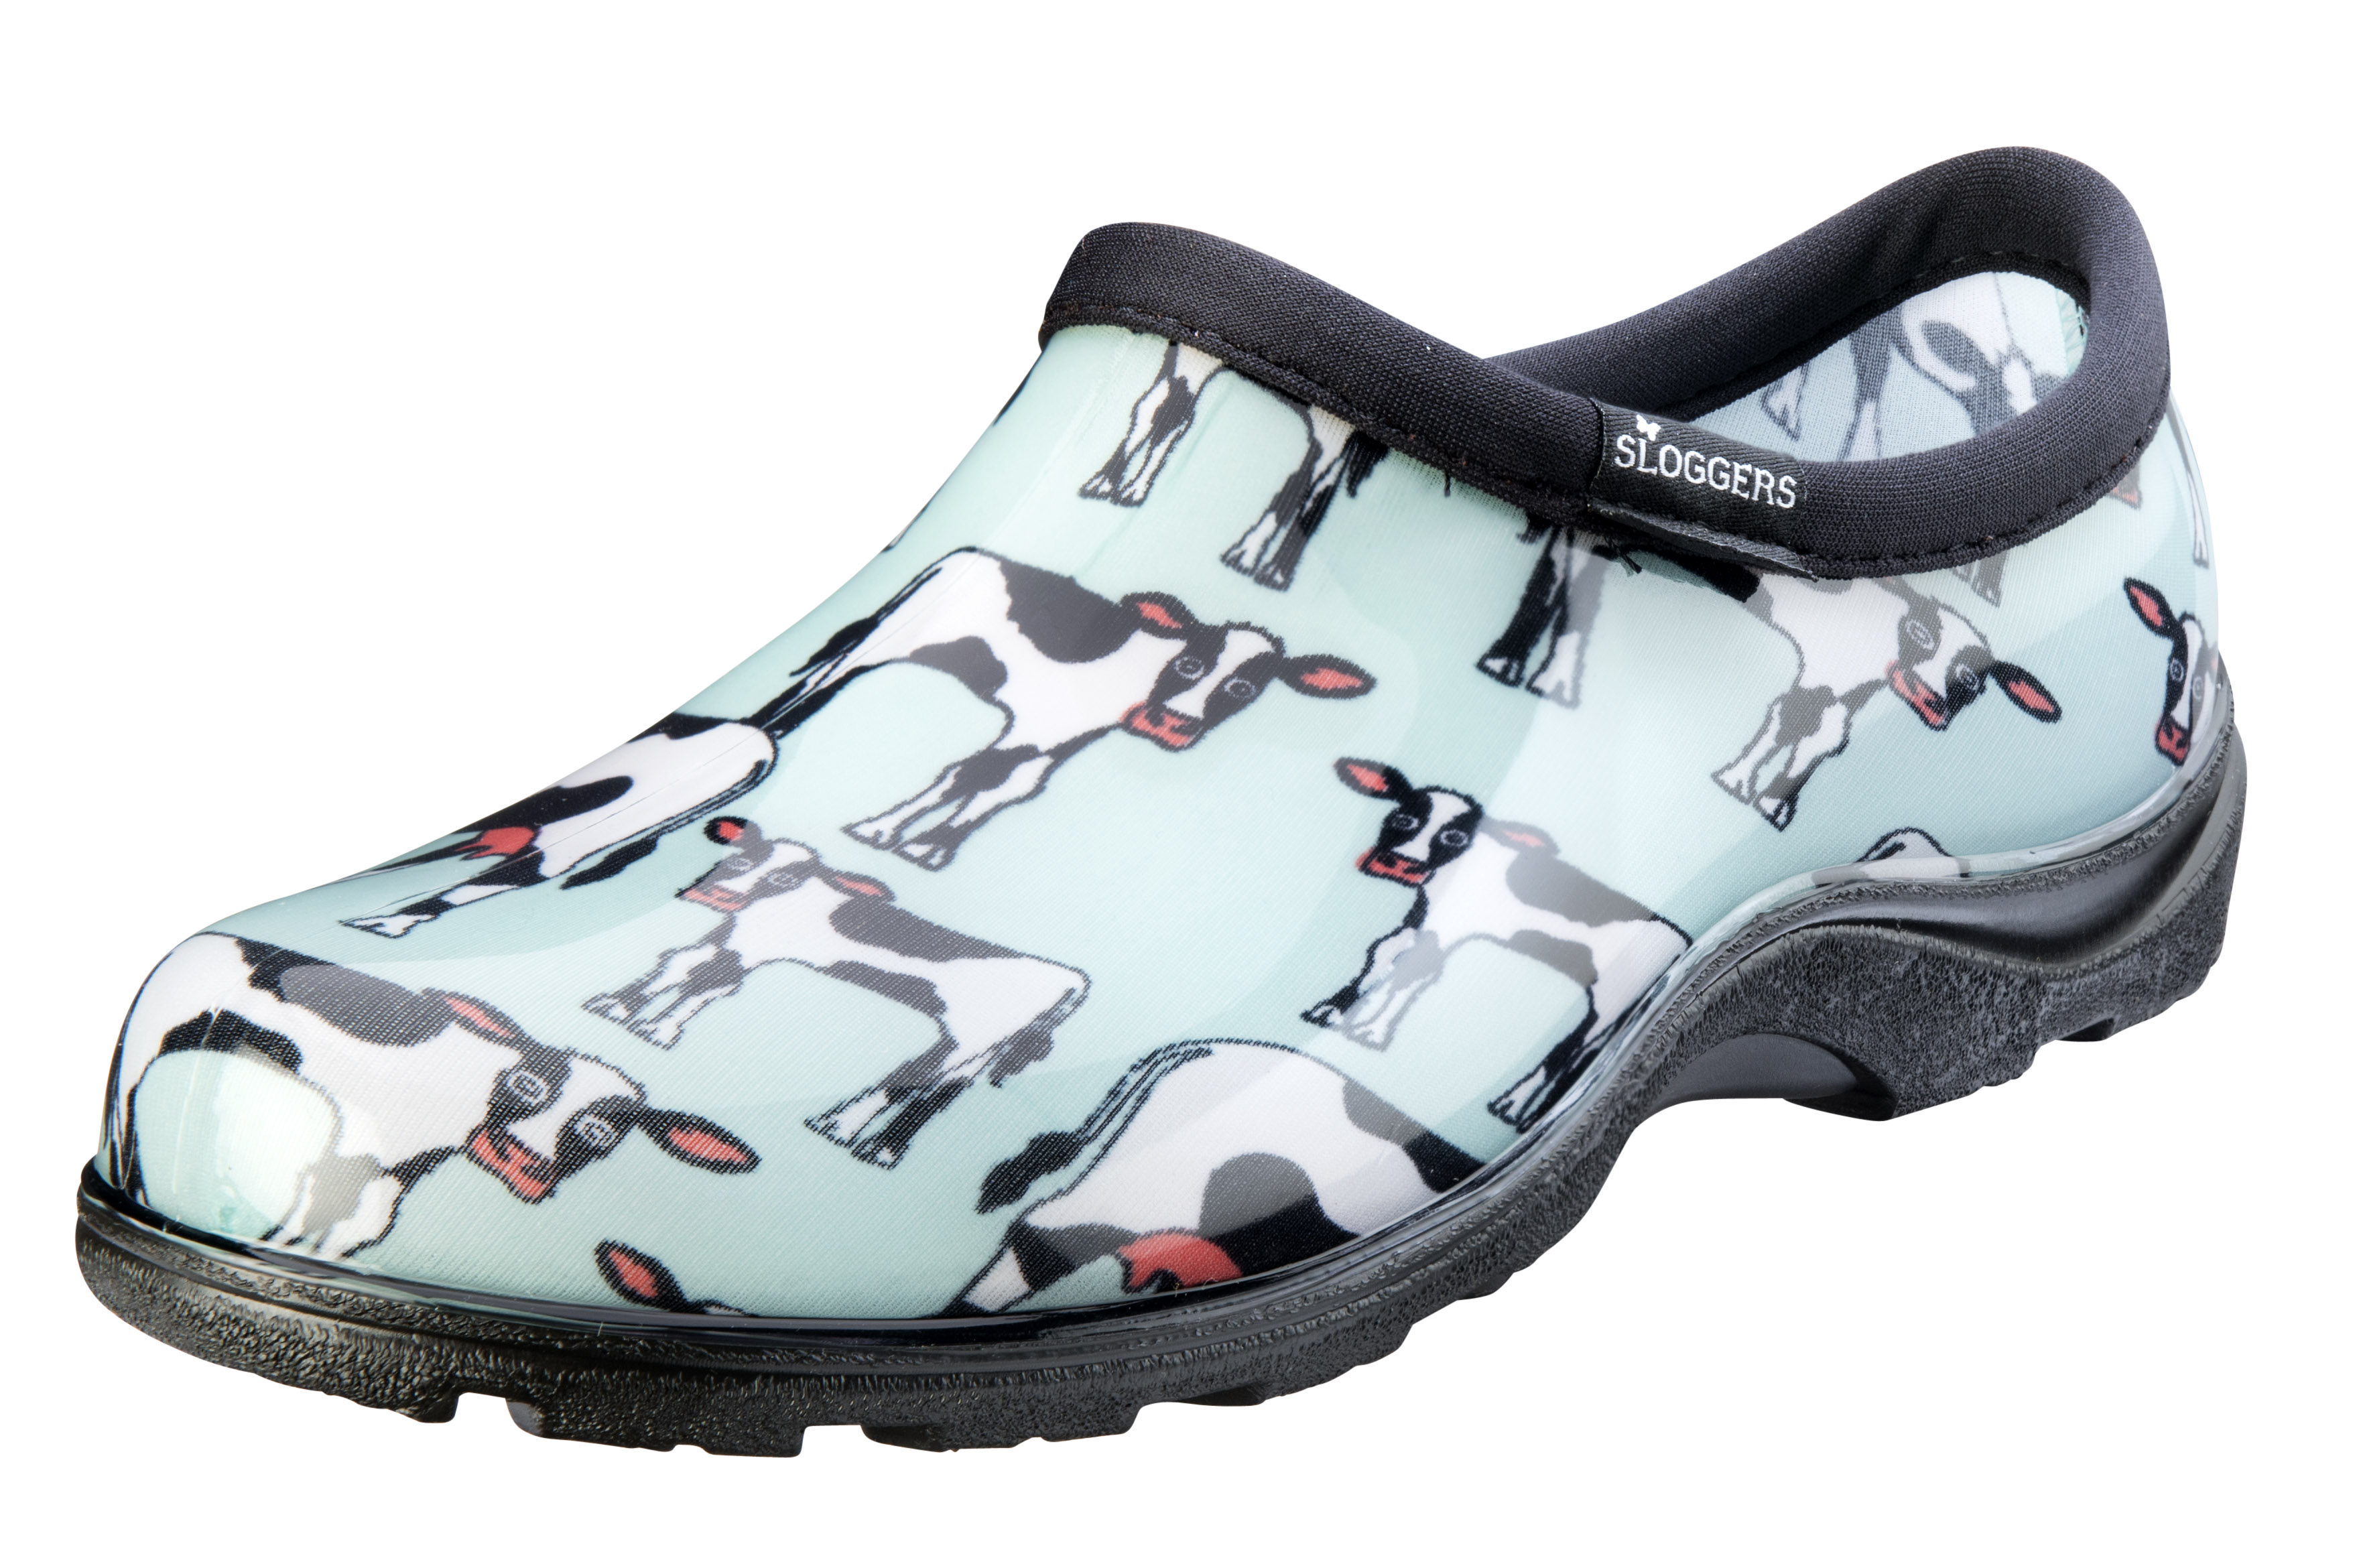 Sloggers Women's Rain & Garden Shoes - Mint Cowabella, Style 5117CWM - image 1 of 3